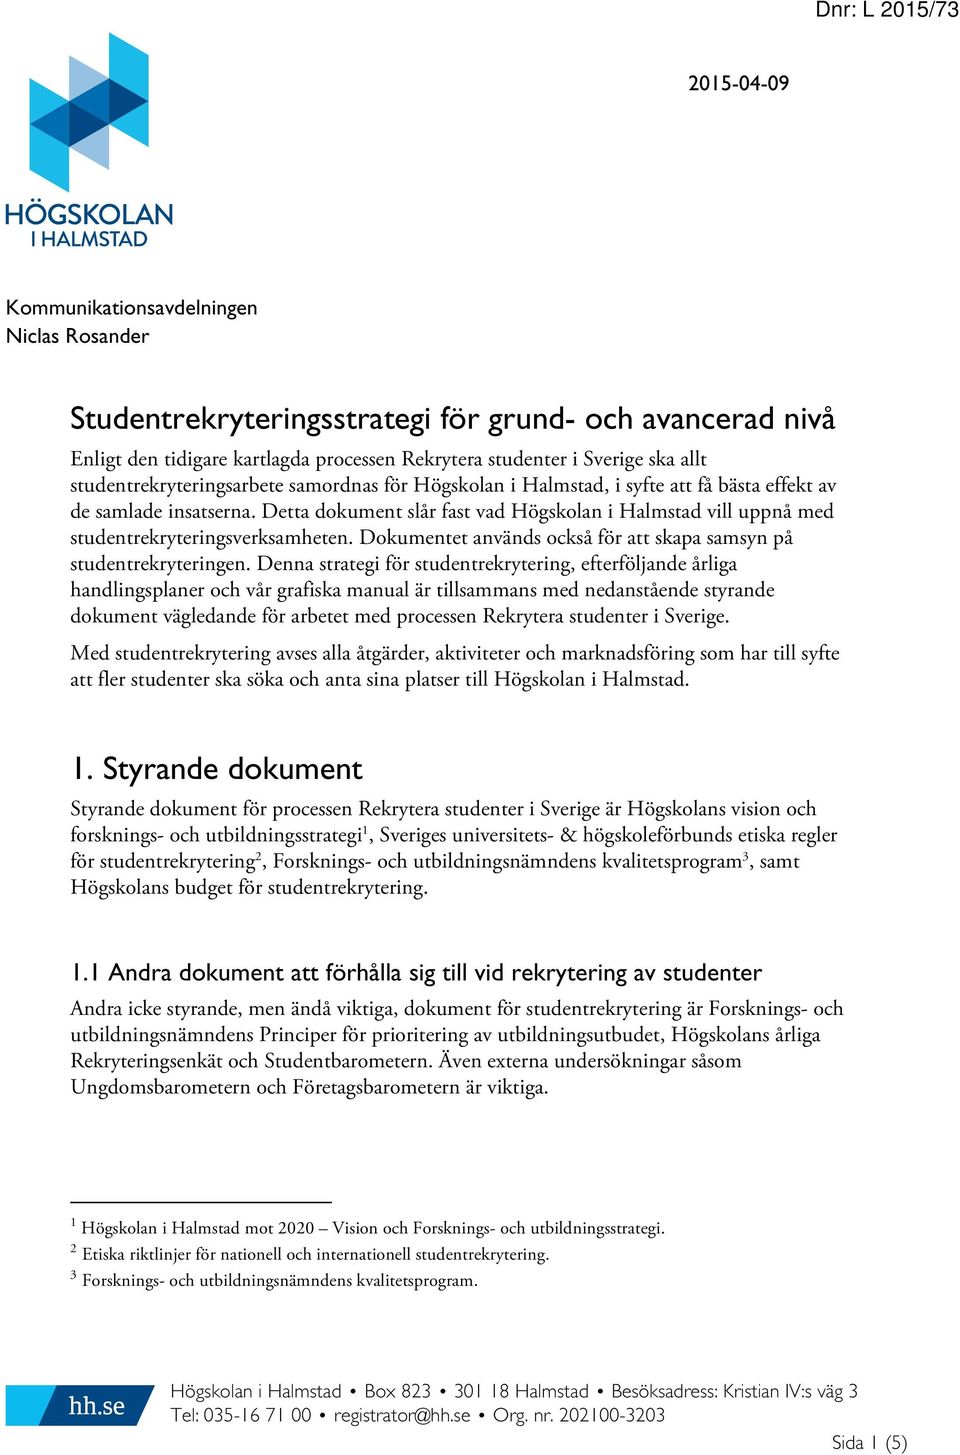 Detta dokument slår fast vad Högskolan i Halmstad vill uppnå med studentrekryteringsverksamheten. Dokumentet används också för att skapa samsyn på studentrekryteringen.